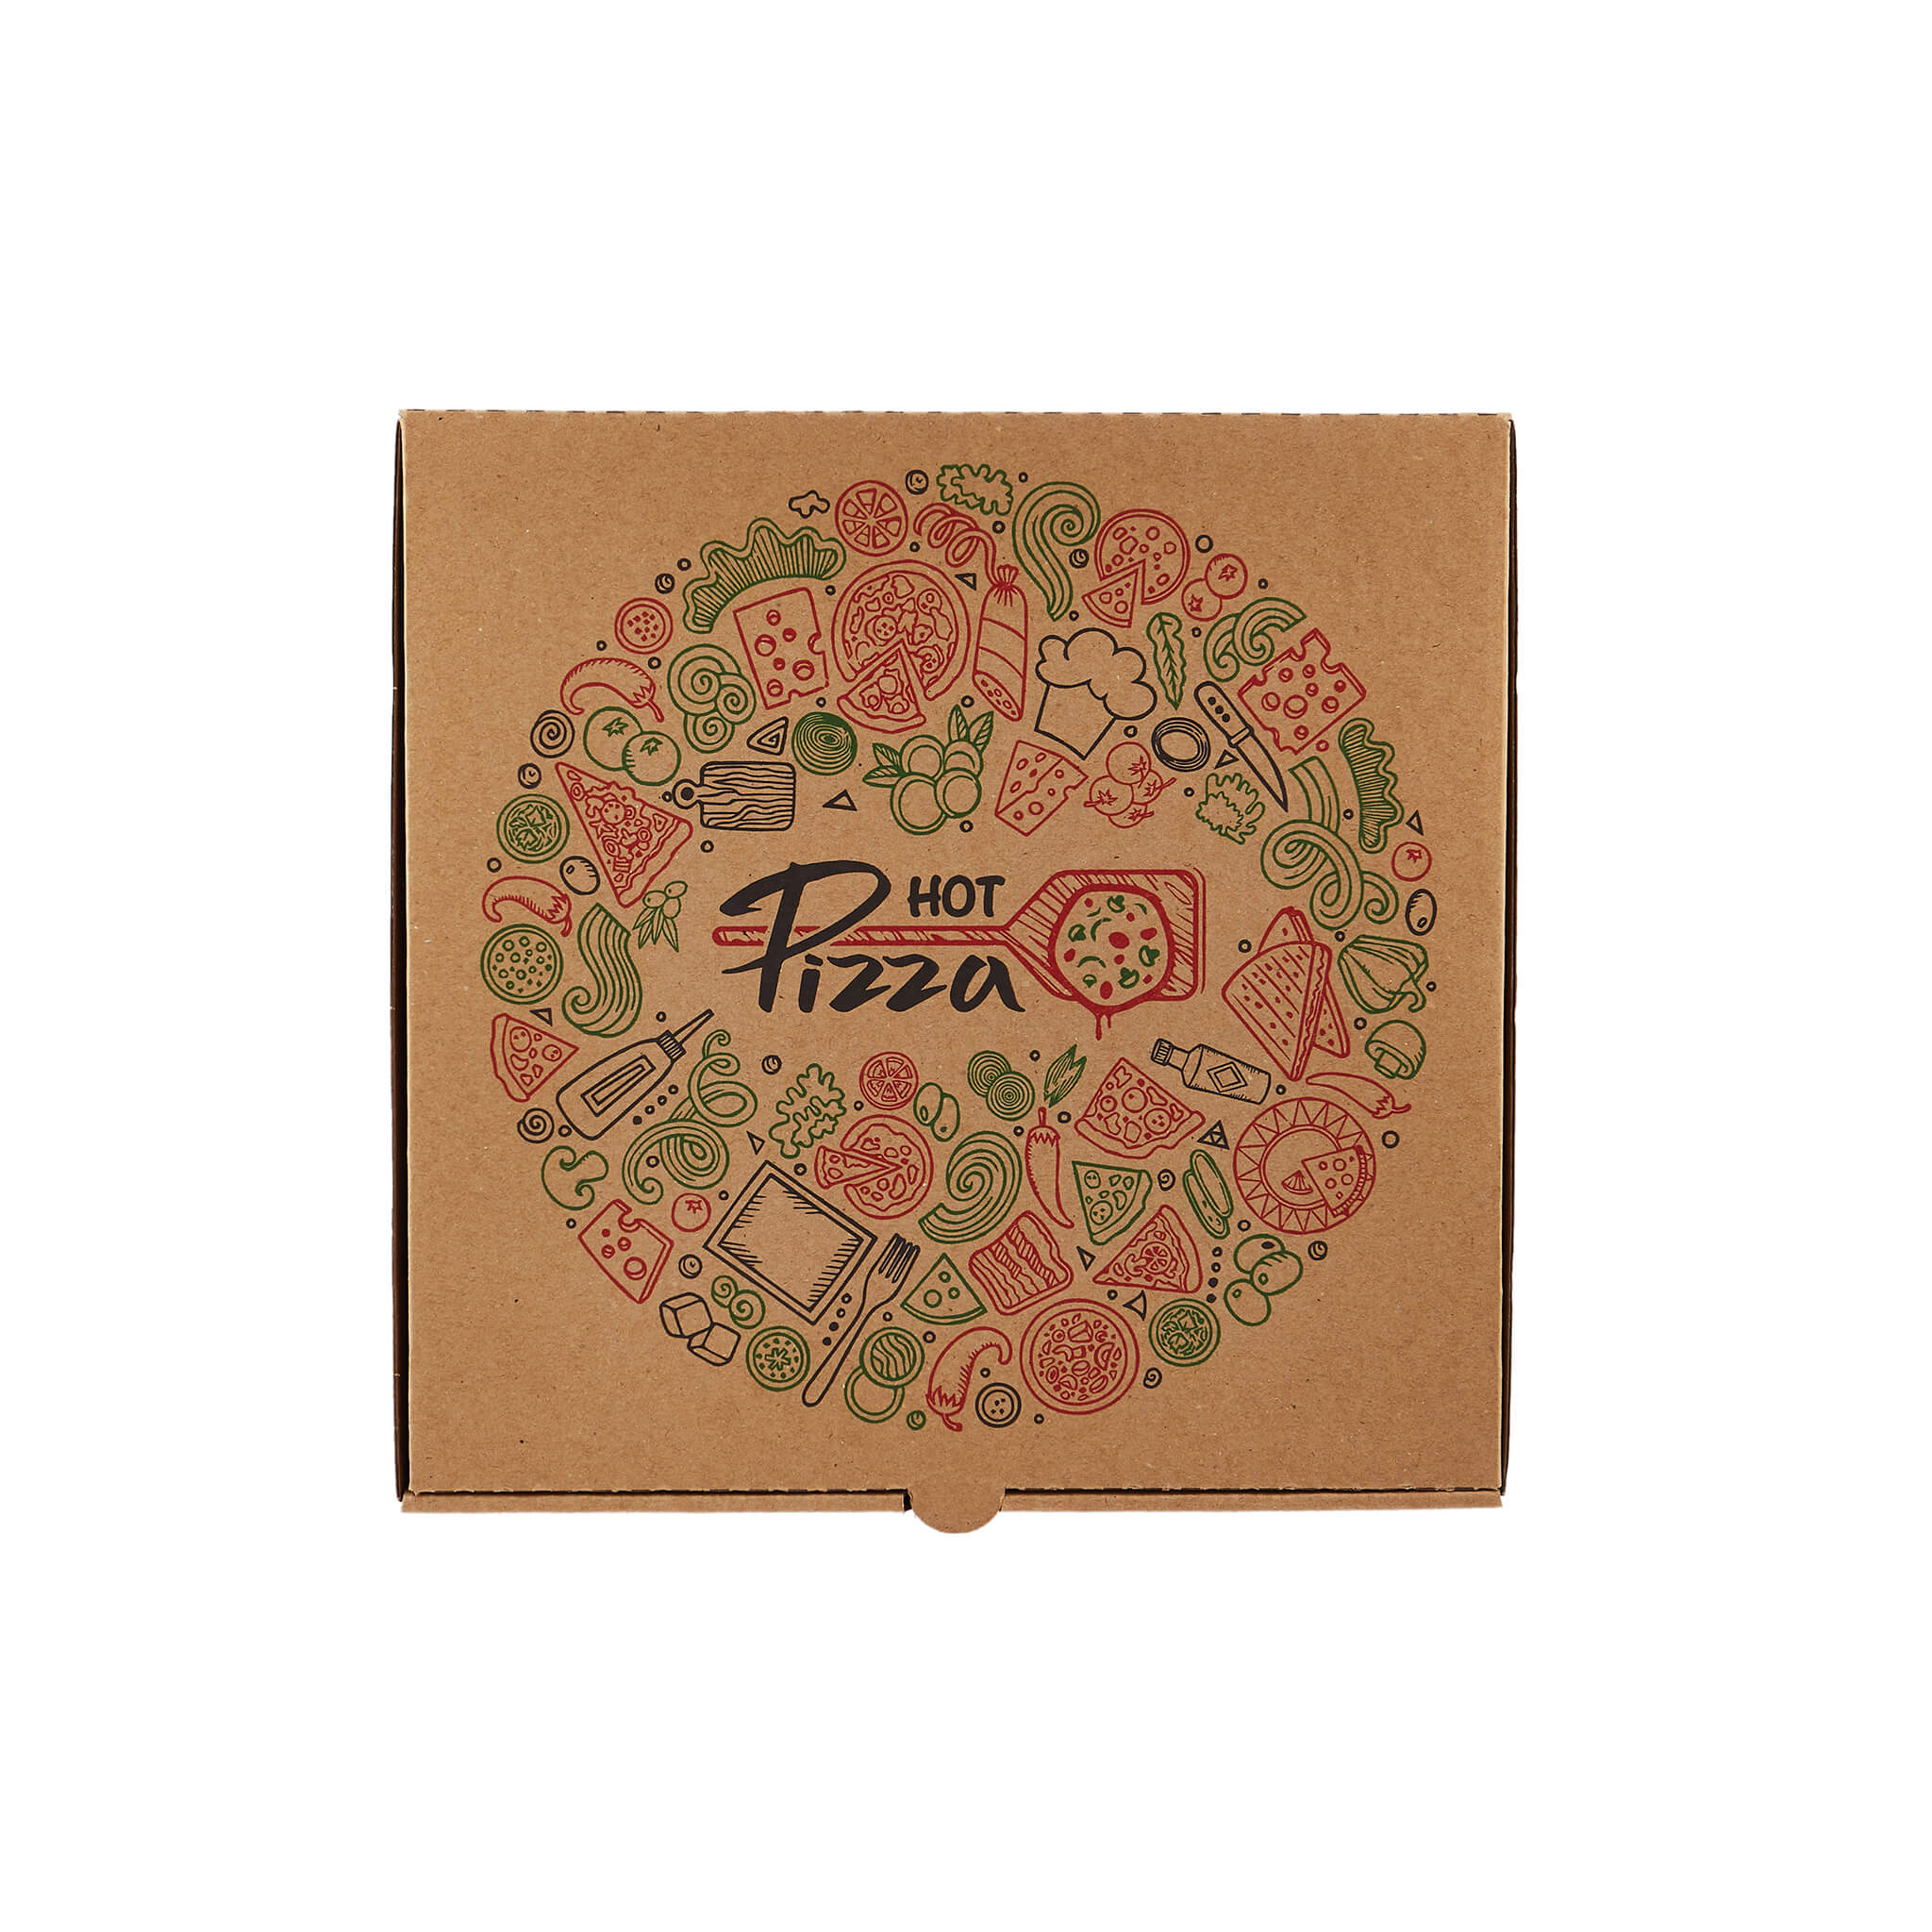 100 pieces Printed Pizza Box-Medium